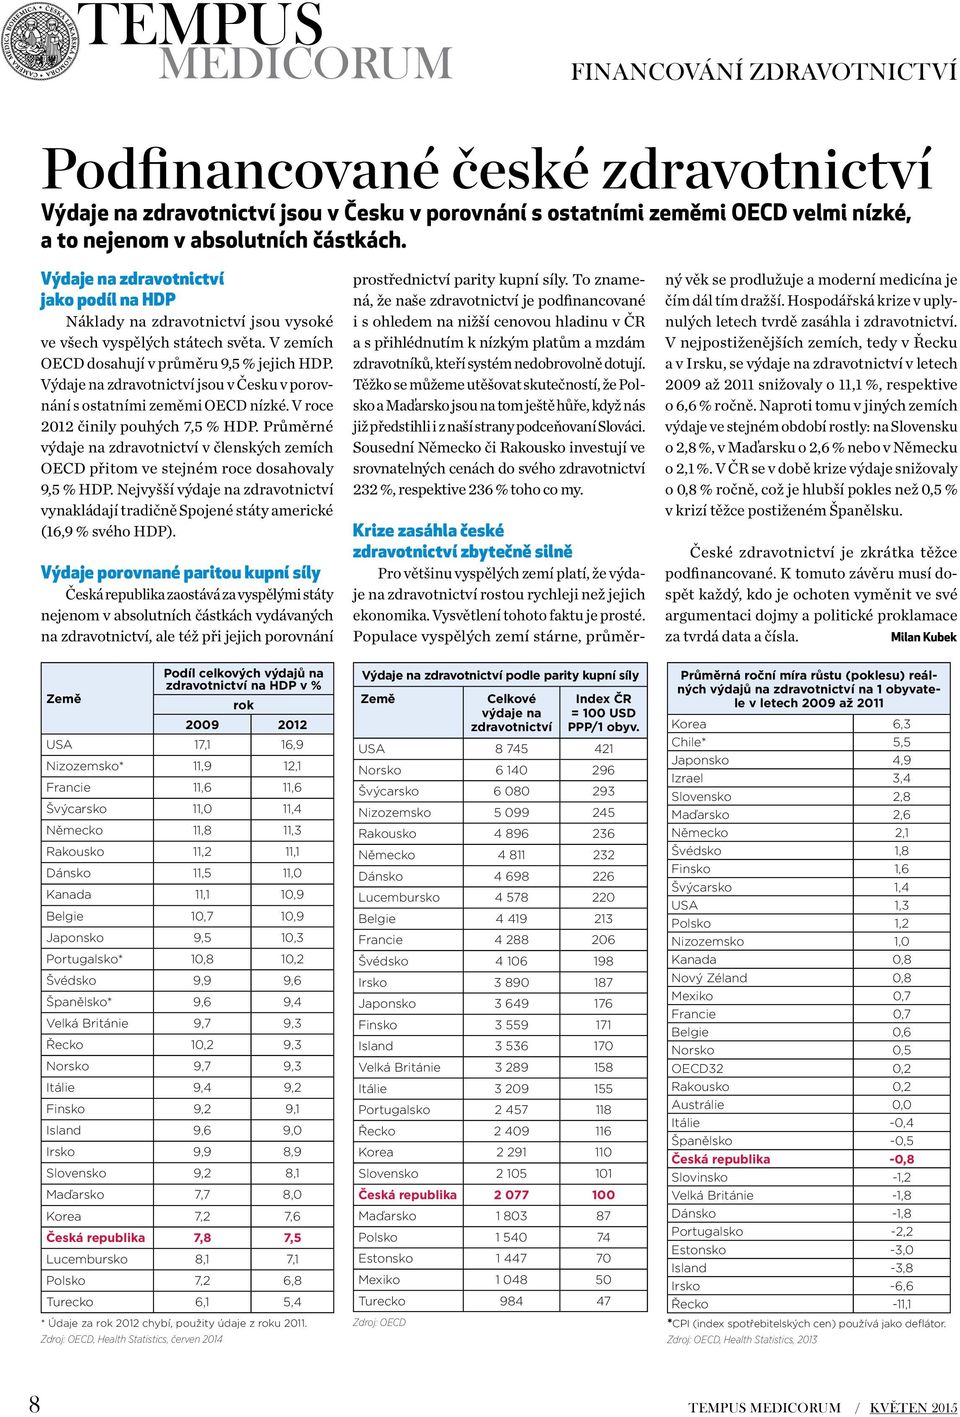 Výdaje na zdravotnictví jsou v Česku v porovnání s ostatními zeměmi OECD nízké. V roce 2012 činily pouhých 7,5 % HDP.